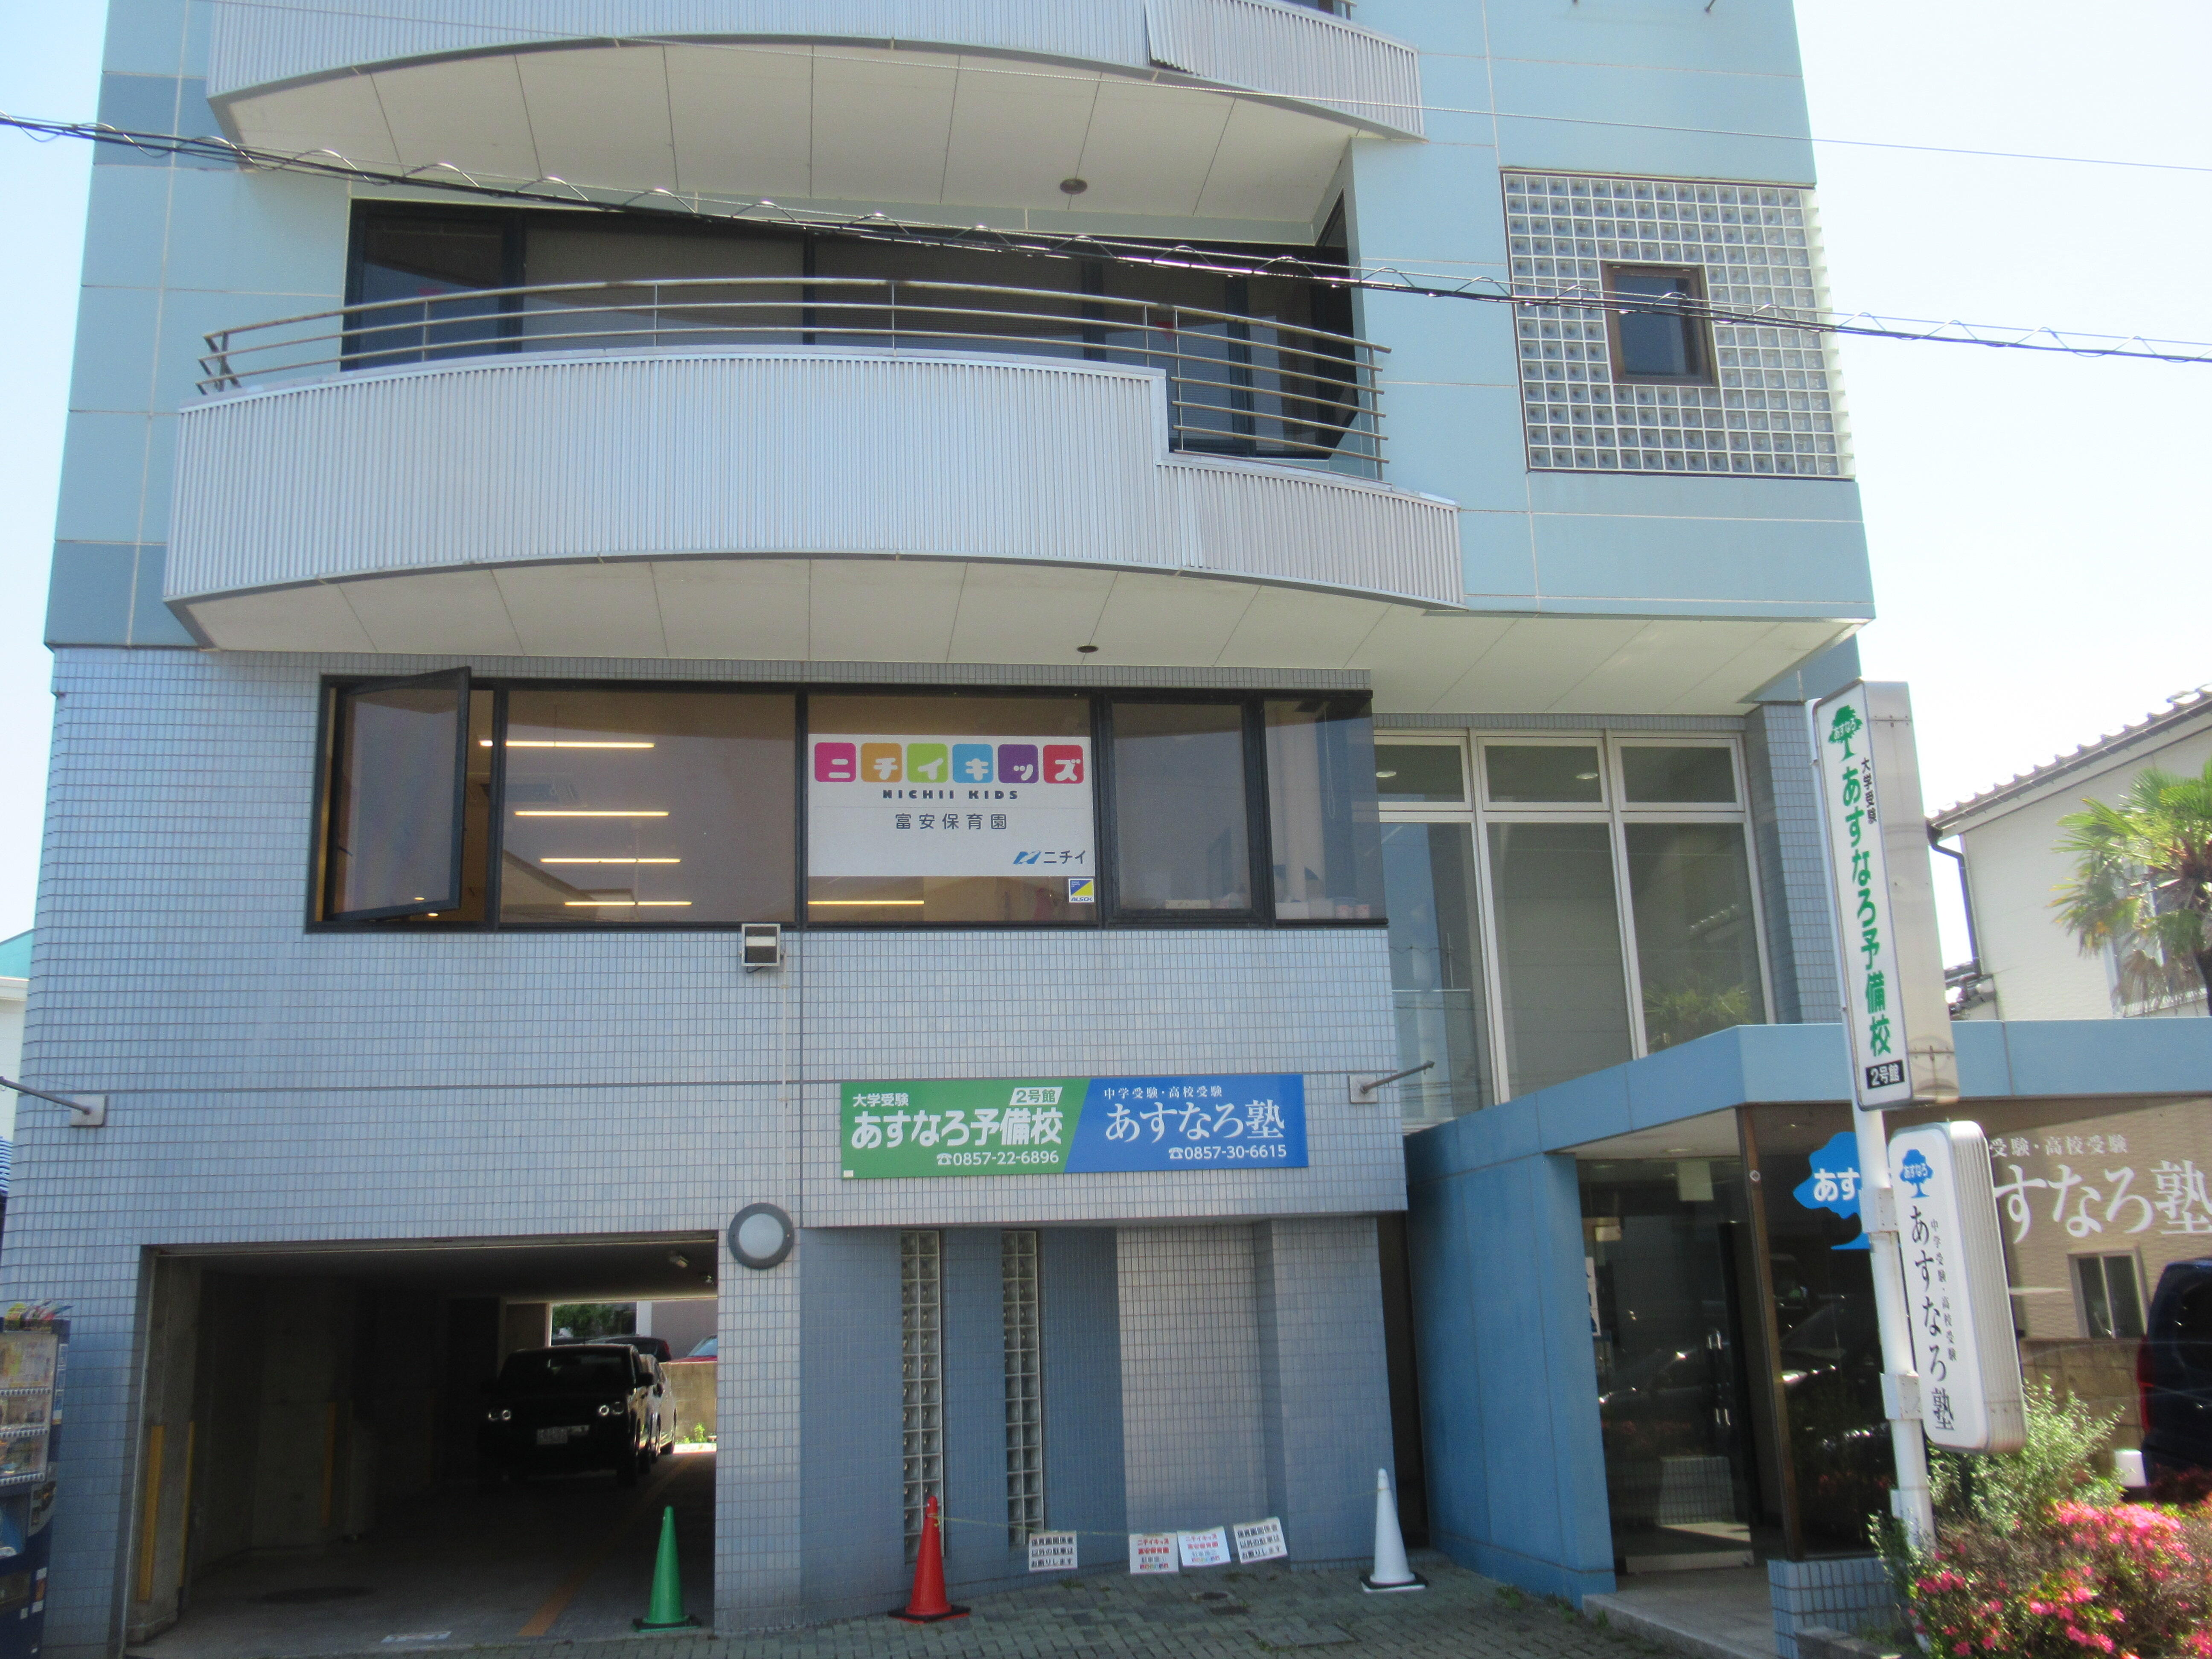 ニチイキッズ富安保育園は鳥取駅近く、鶏鳴学園ビルの2階にあります。